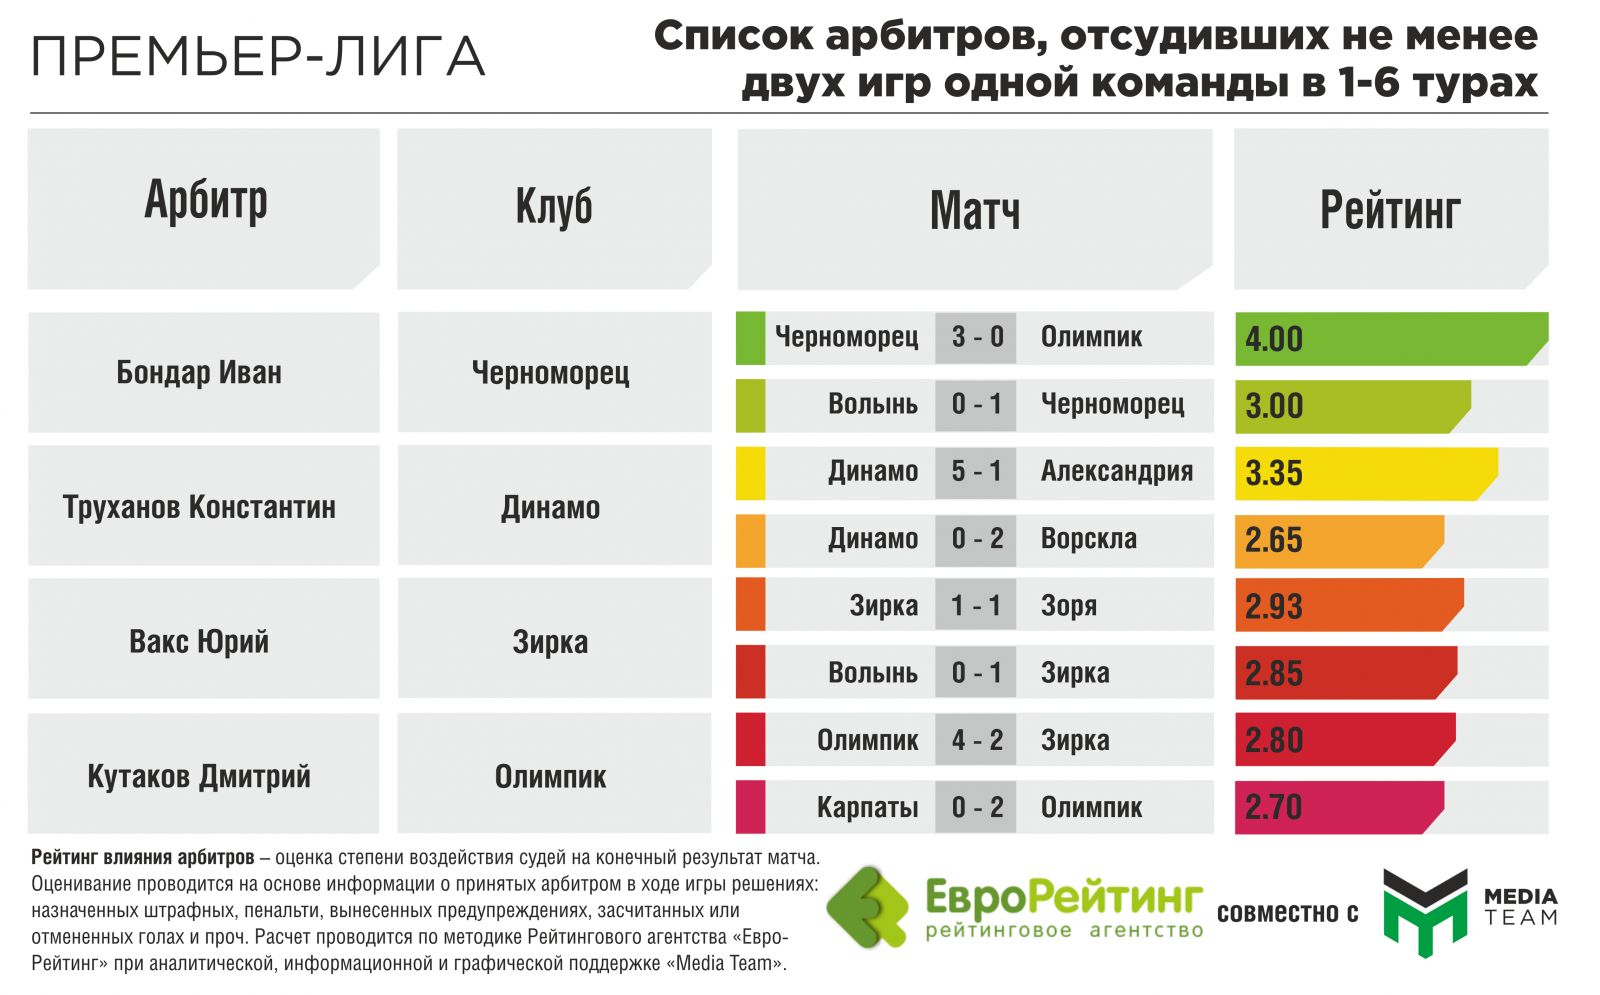 Ranking match. Матча рейтинг производителей. Судьи Украины список.